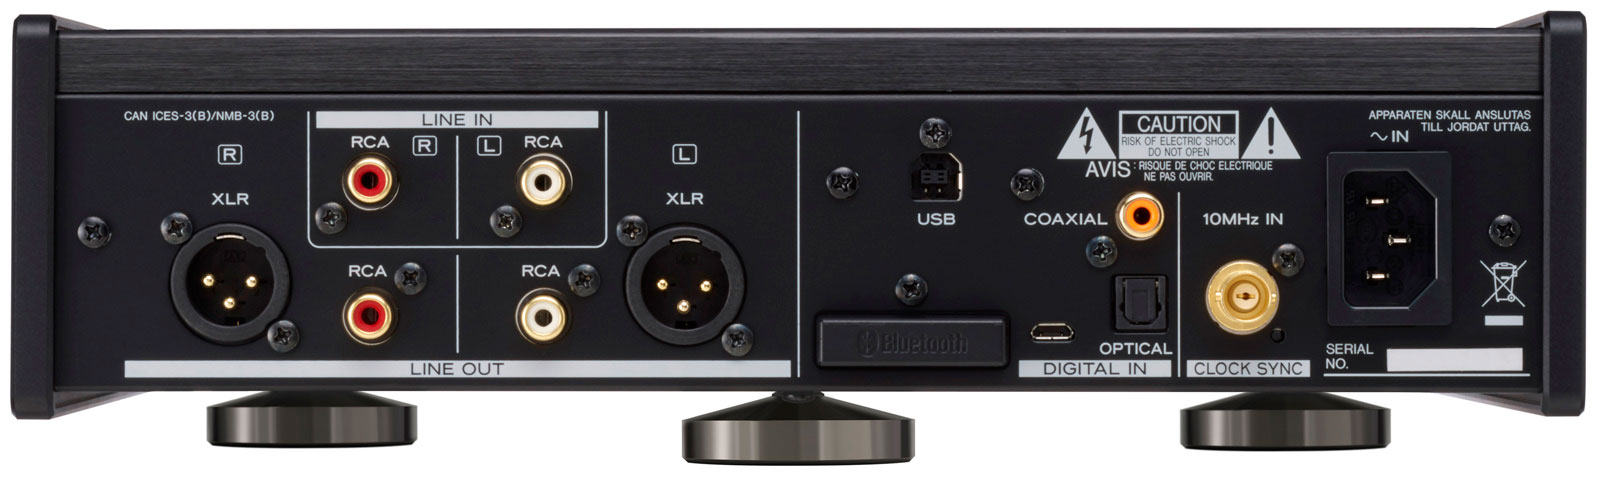 Teac UD-505X (Black) задняя панель